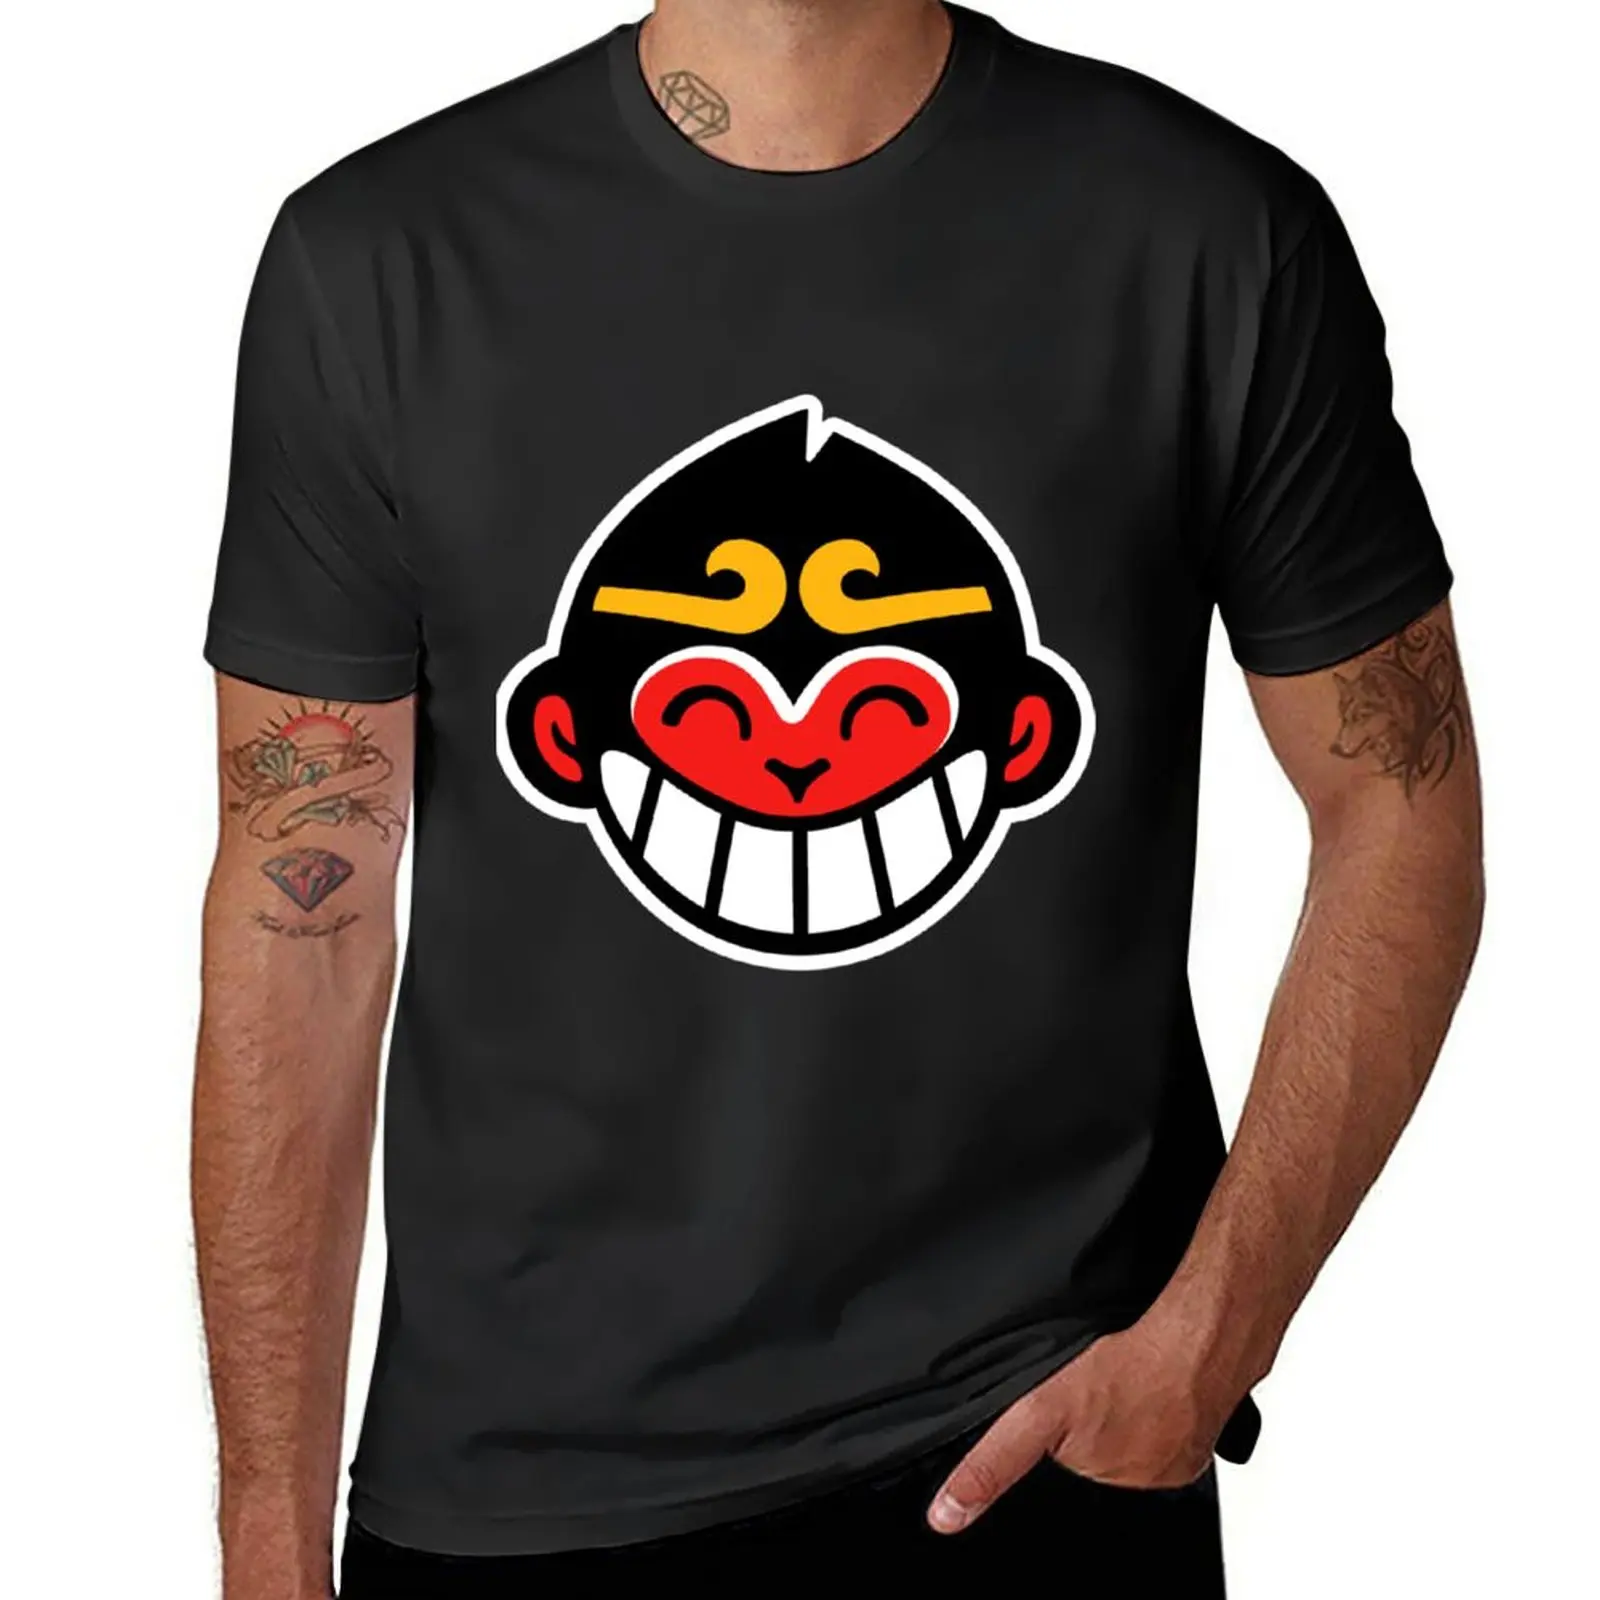 Новая футболка с символом Monkie kid для мальчиков, футболки оверсайз, футболки в тяжелом весе для мужчин